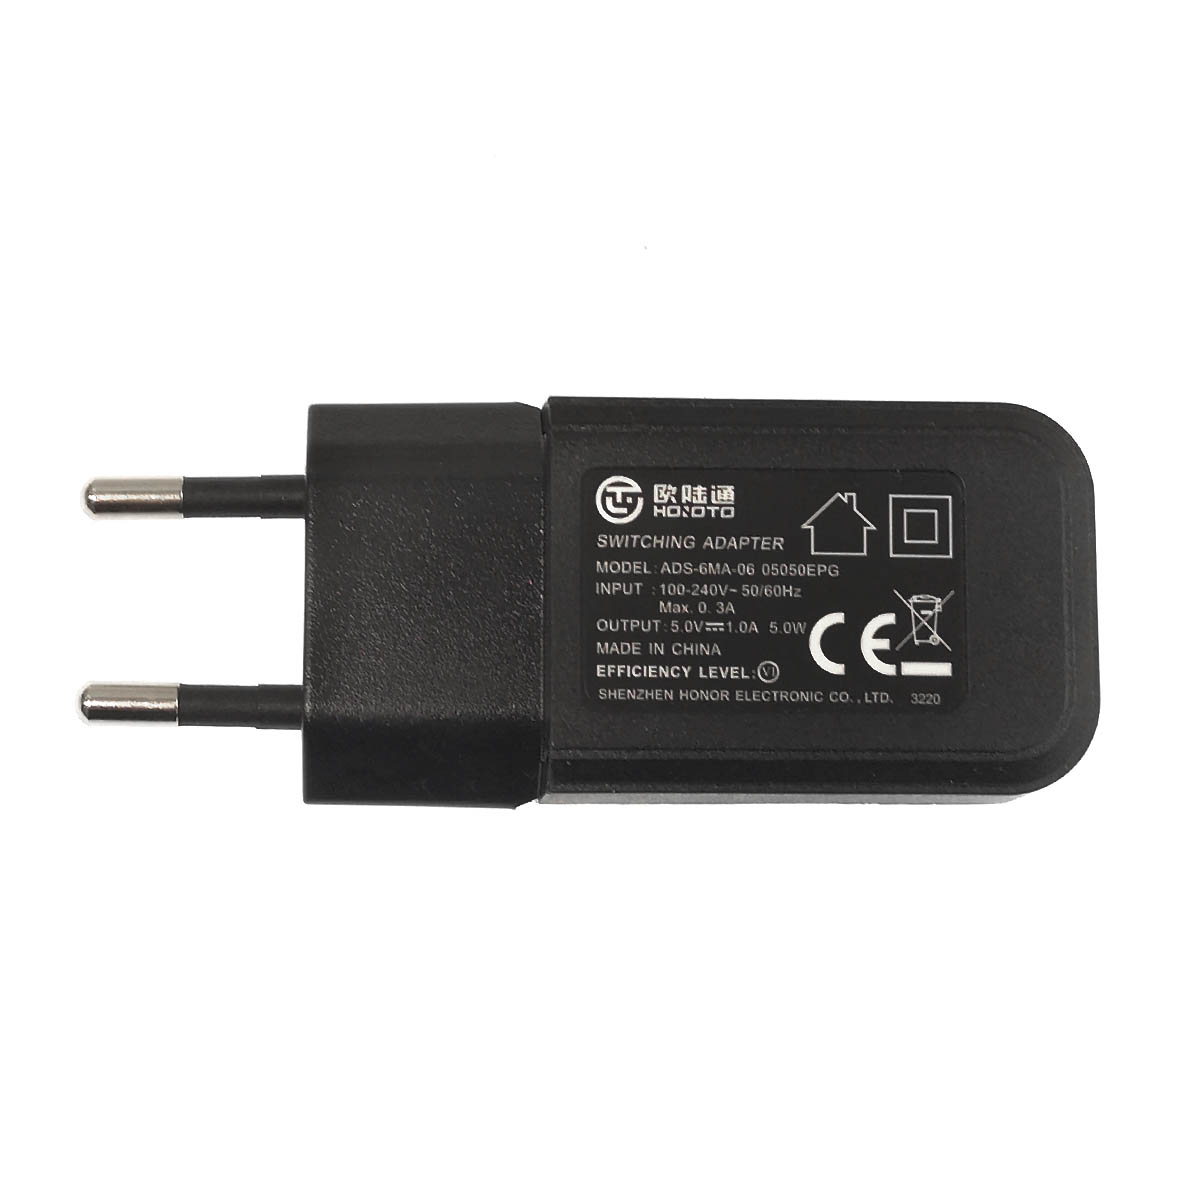 СЗУ (сетевое зарядное устройство) 1 USB порт, цвет черный